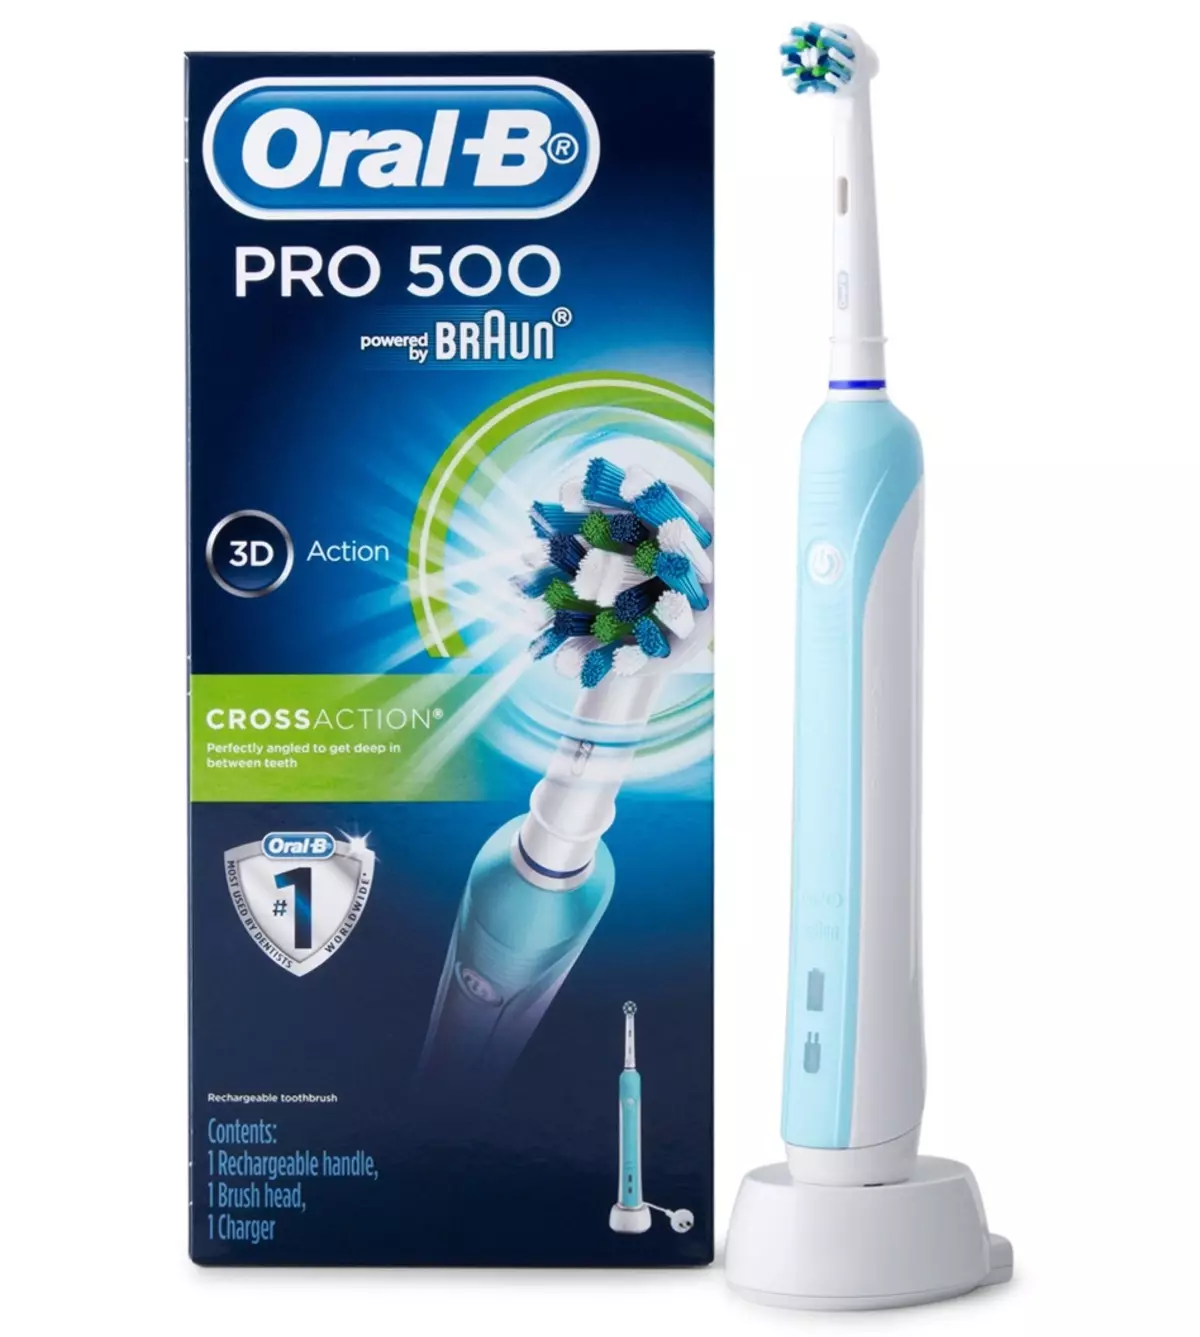 แปรงสีฟันไฟฟ้า Oral-B: Vitality และ Pro 500 ข้ามและสีขาว 3 มิติสมาร์ท 4 และอิเล็กโทรเลต Braun อื่น ๆ วิธีการเลือก? ความคิดเห็น 16159_23